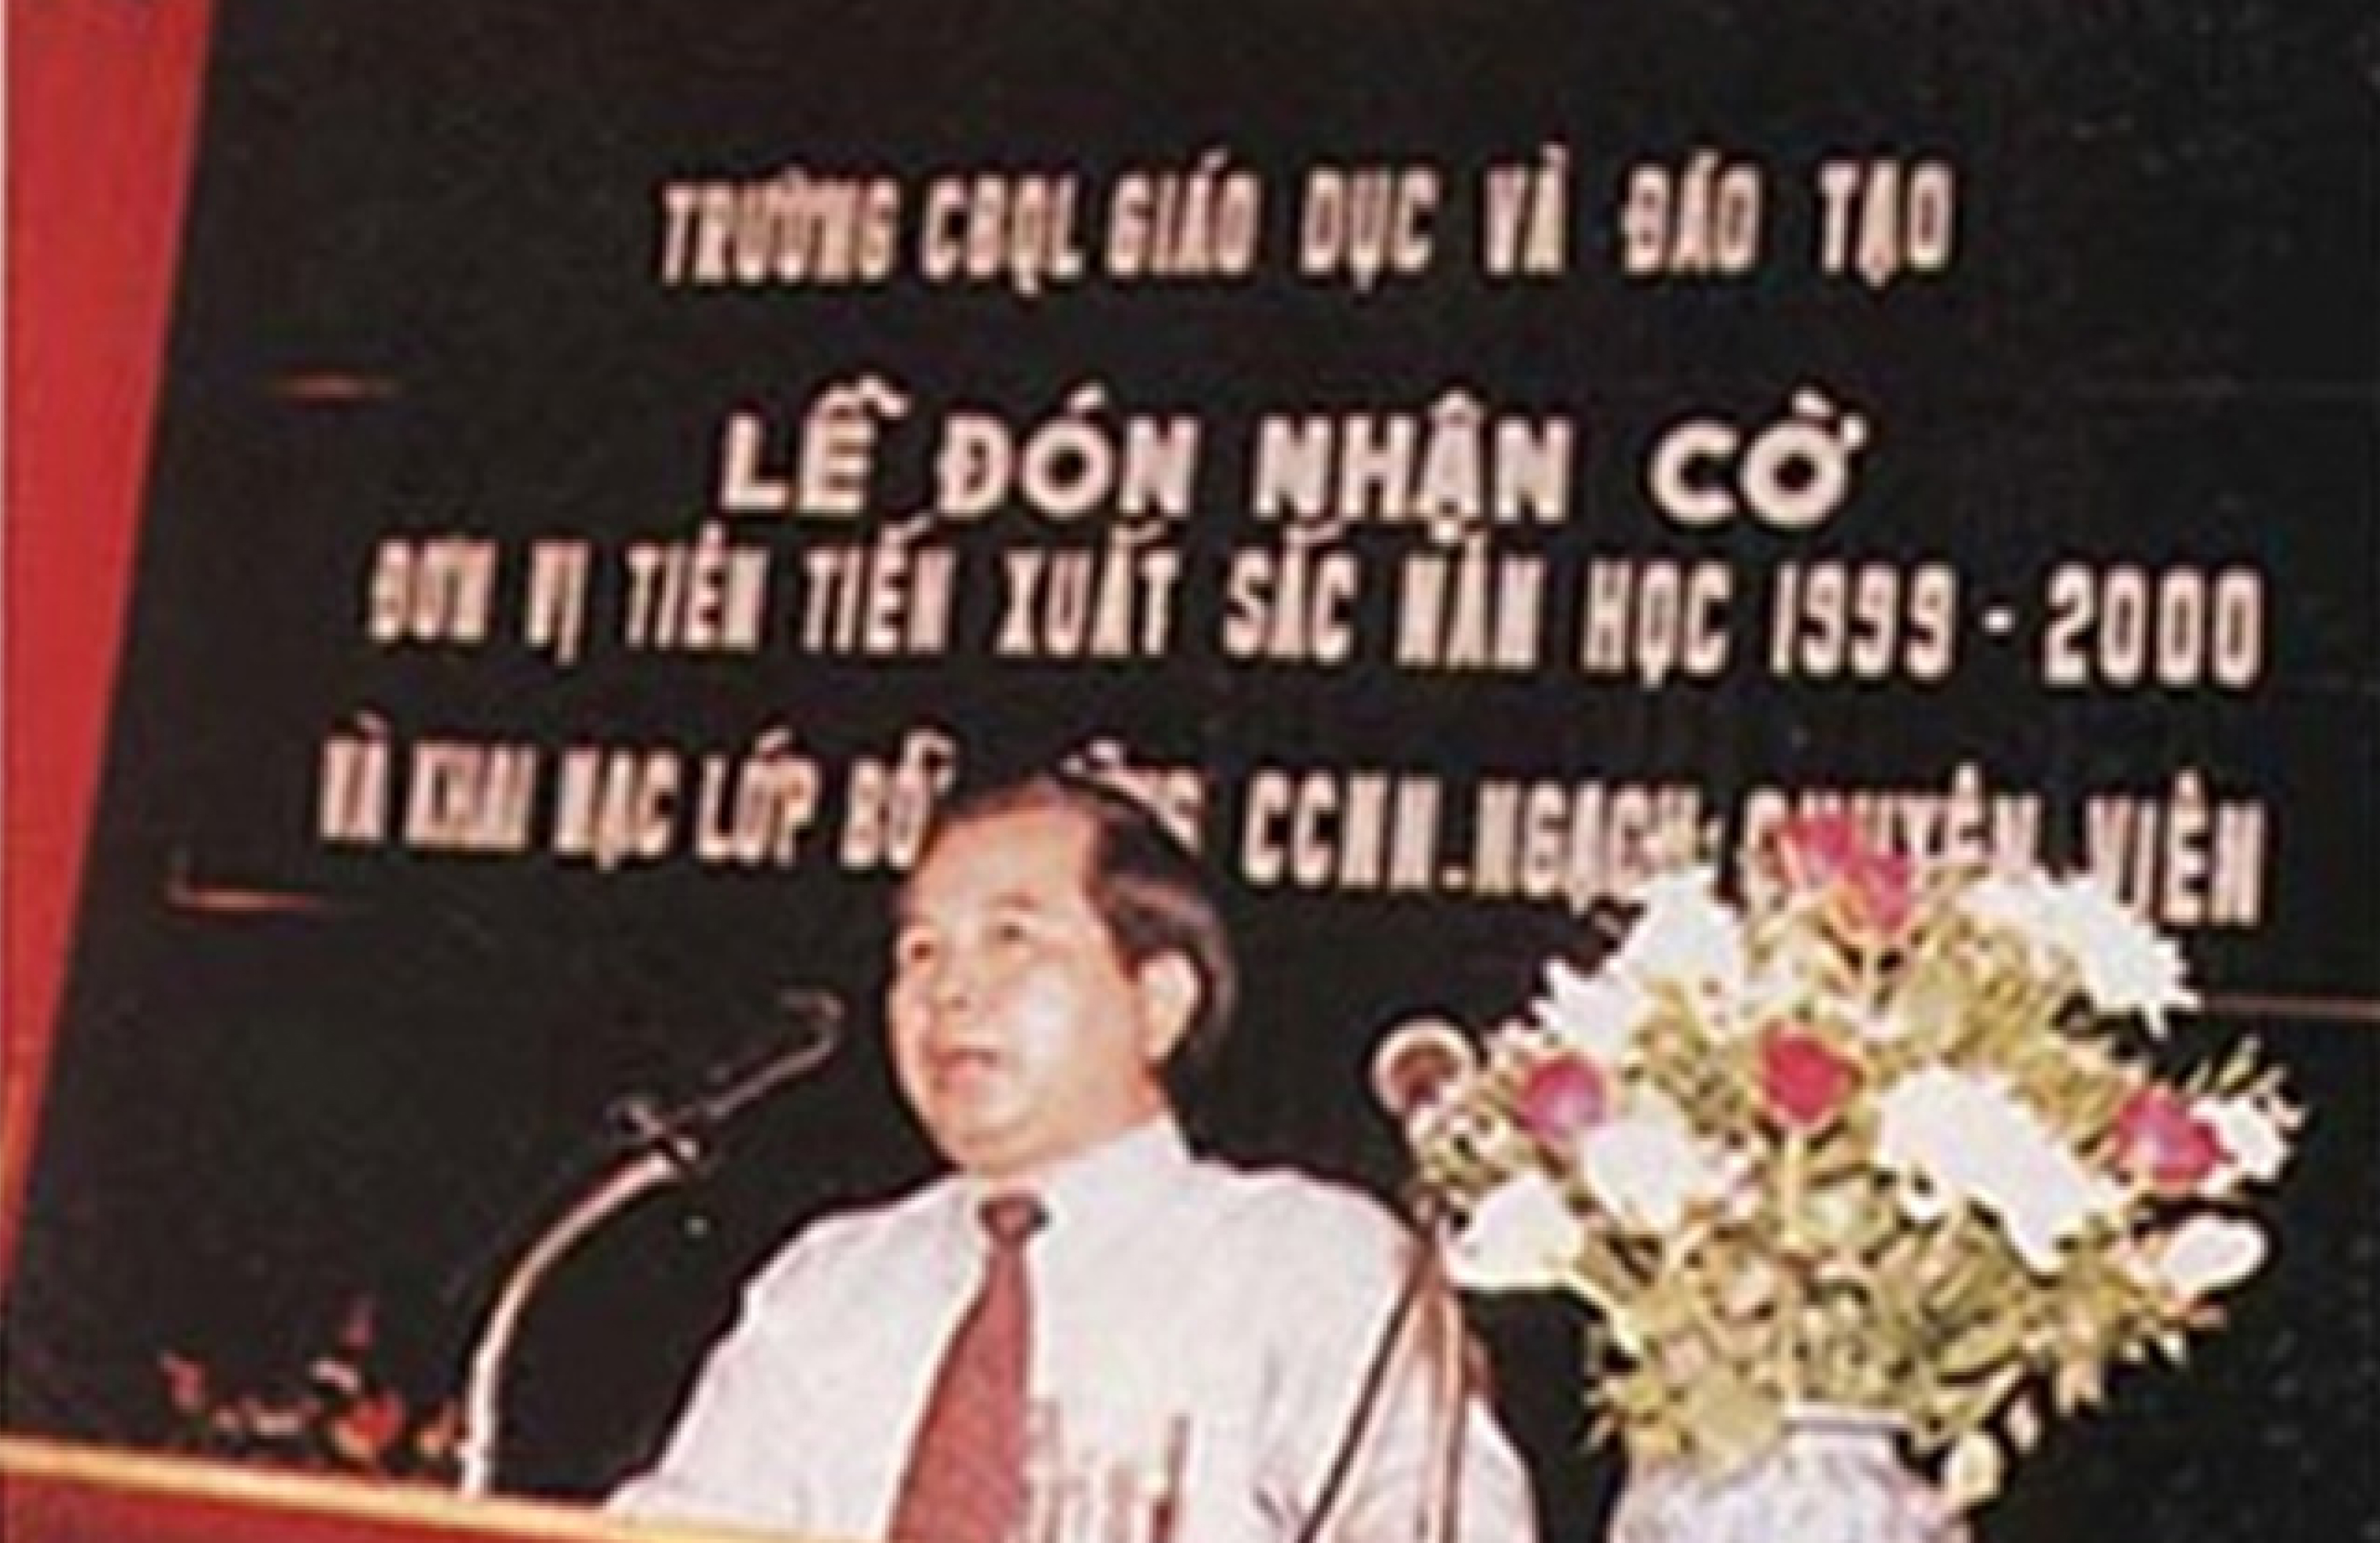 Nguyên Bộ trưởng Bộ Giáo dục và Đào tạo Nguyễn Minh Hiển phát biểu tại lễ đón nhận cờ thi đua tiên tiến xuất sắc của trường (1999-2000)   